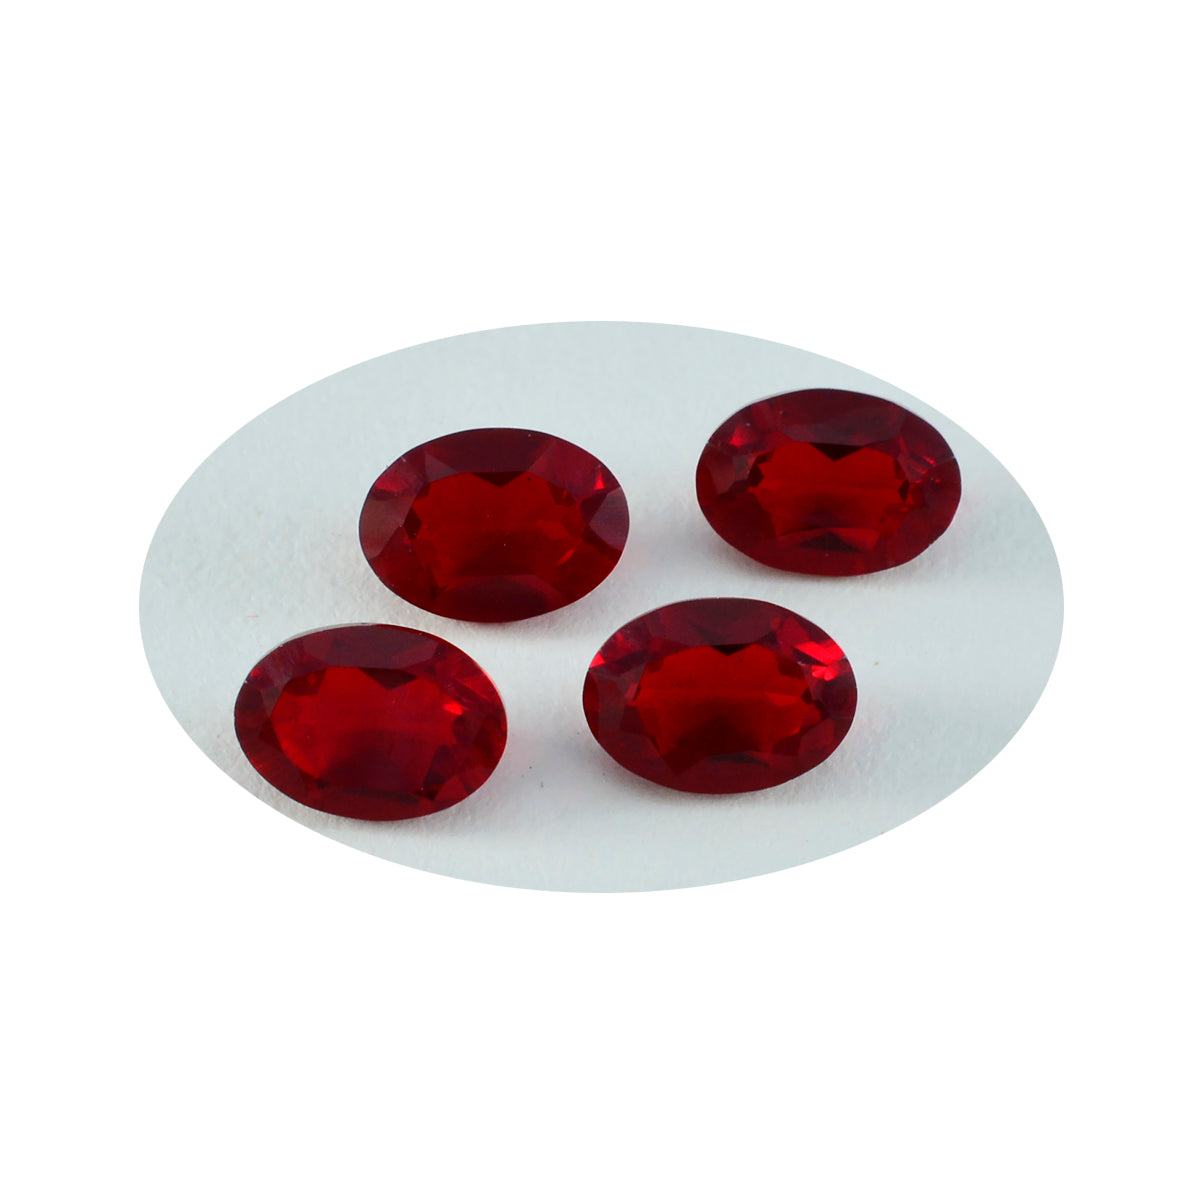 riyogems 1st röd rubin cz fasetterad 6x8 mm oval form häpnadsväckande kvalitetsädelstenar